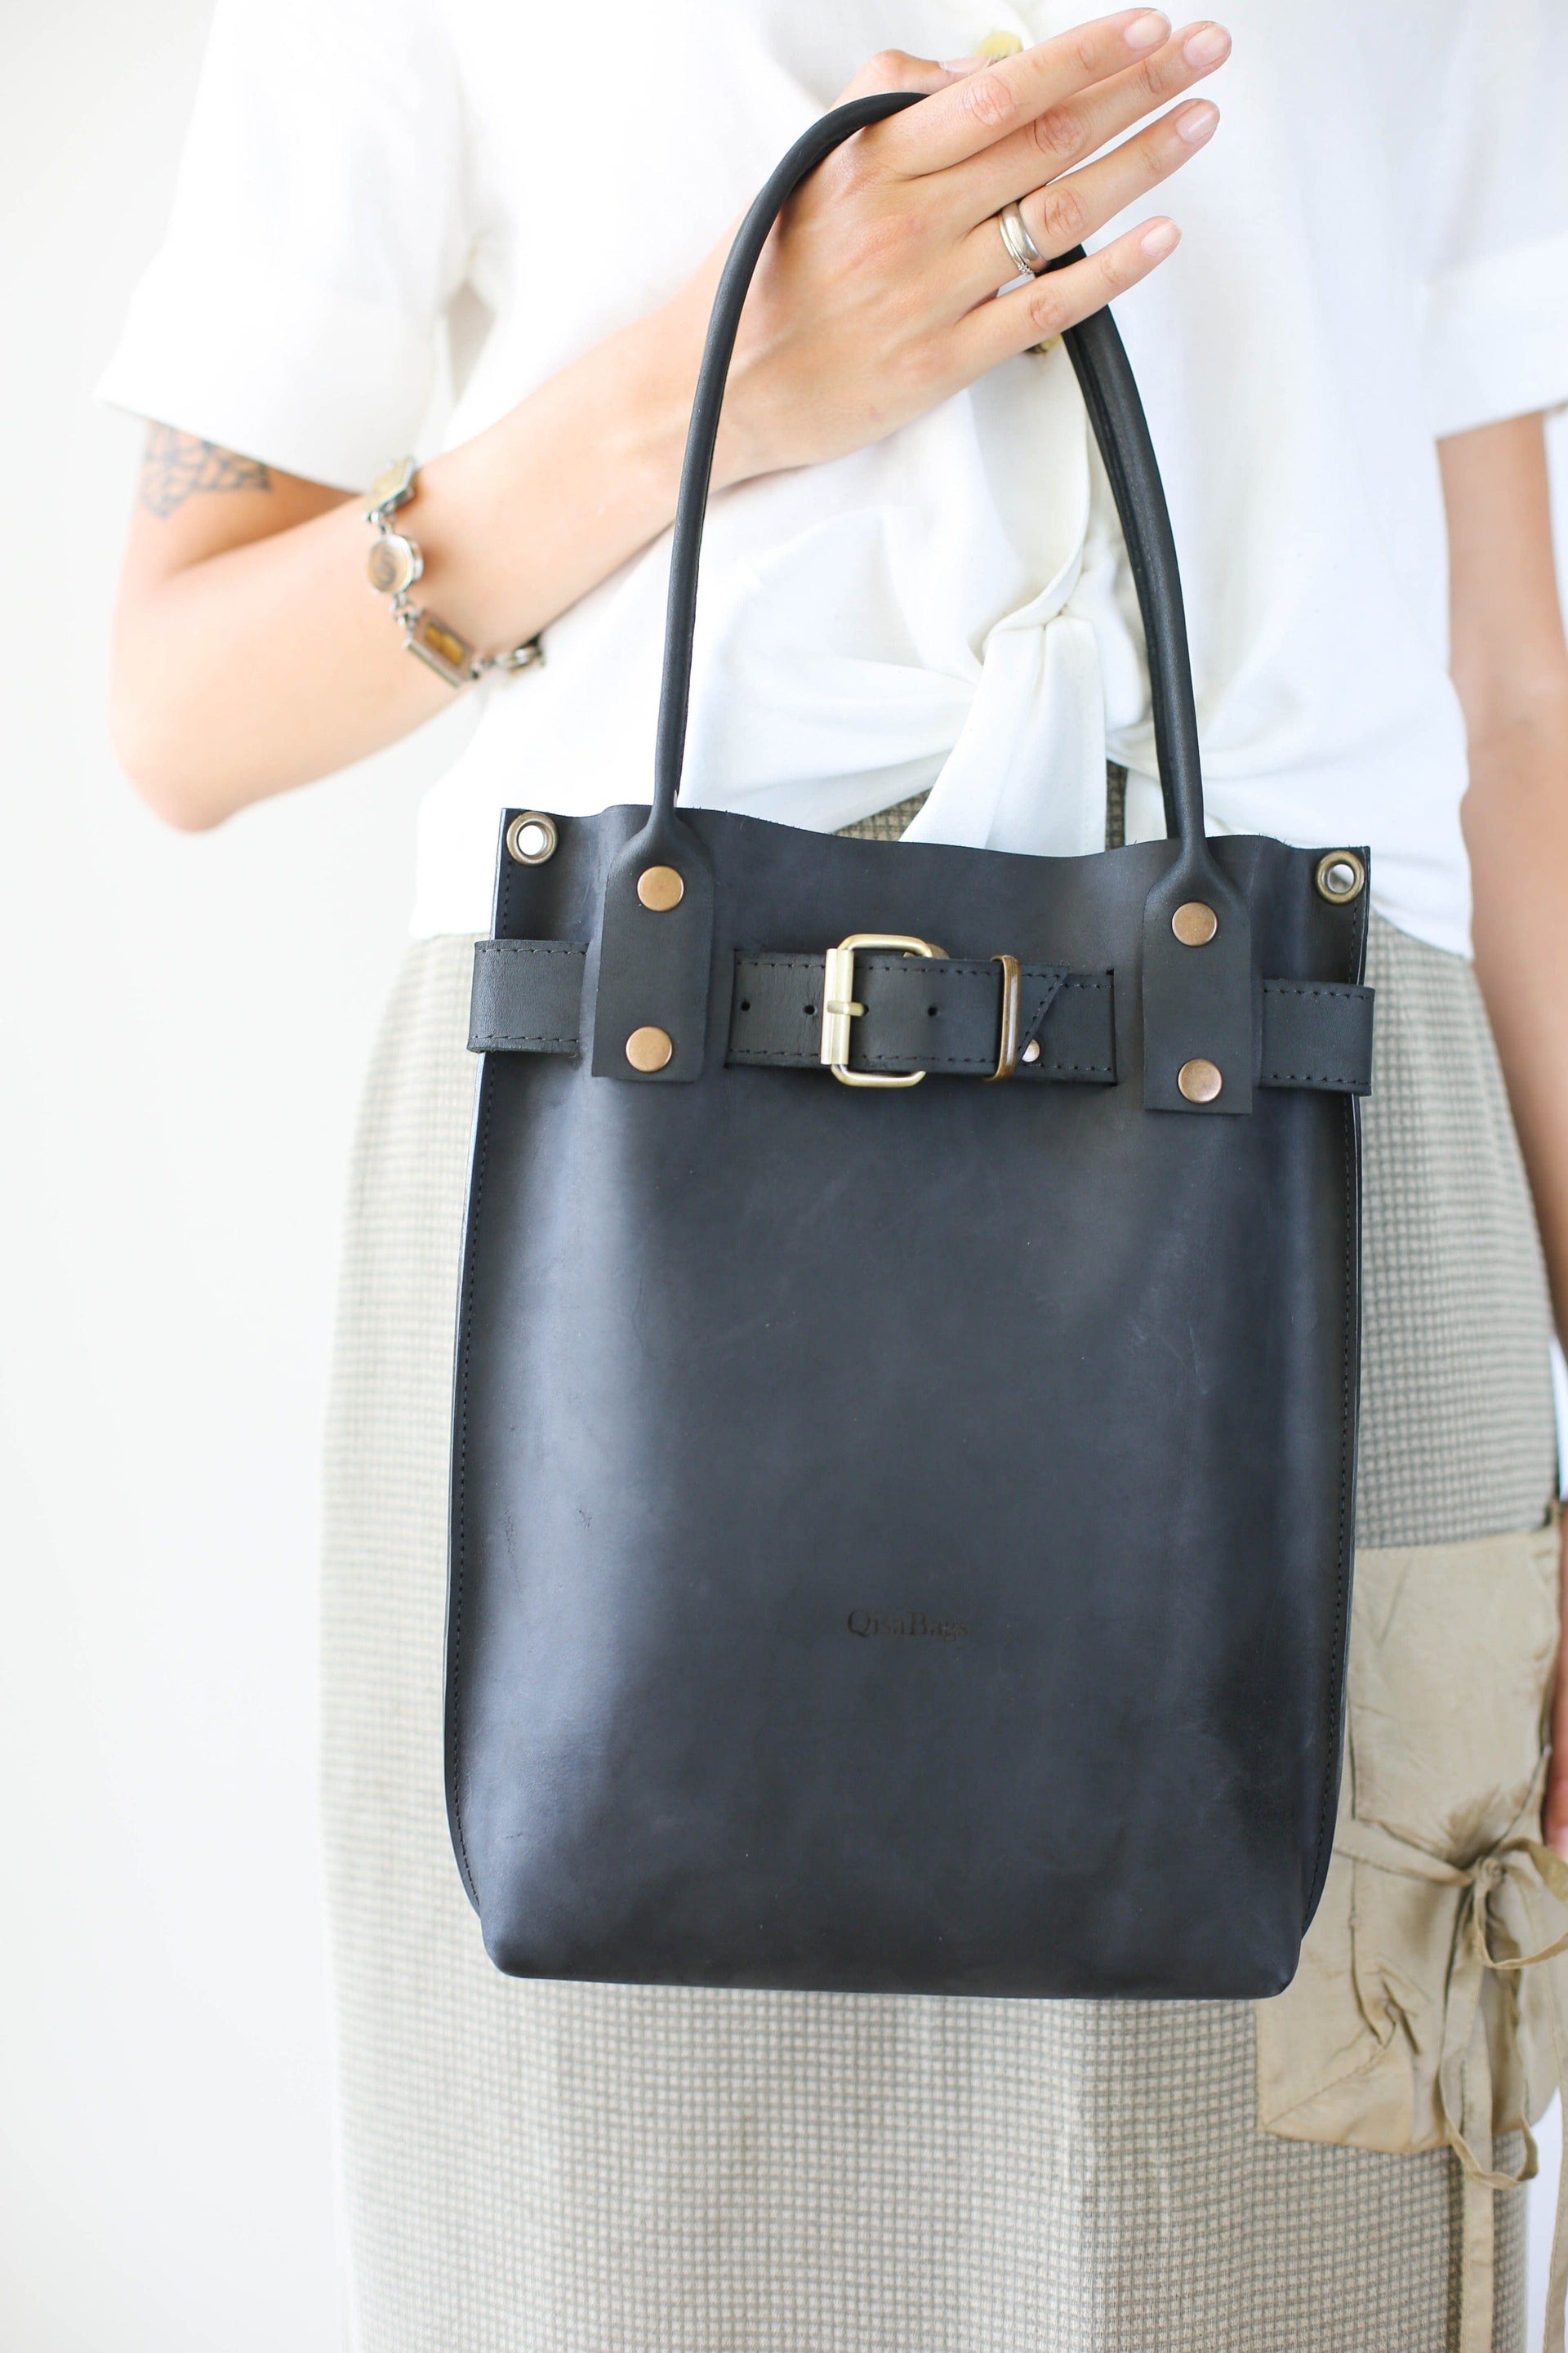 Black Leather Handbag - Black Leather Purse - Qisabags